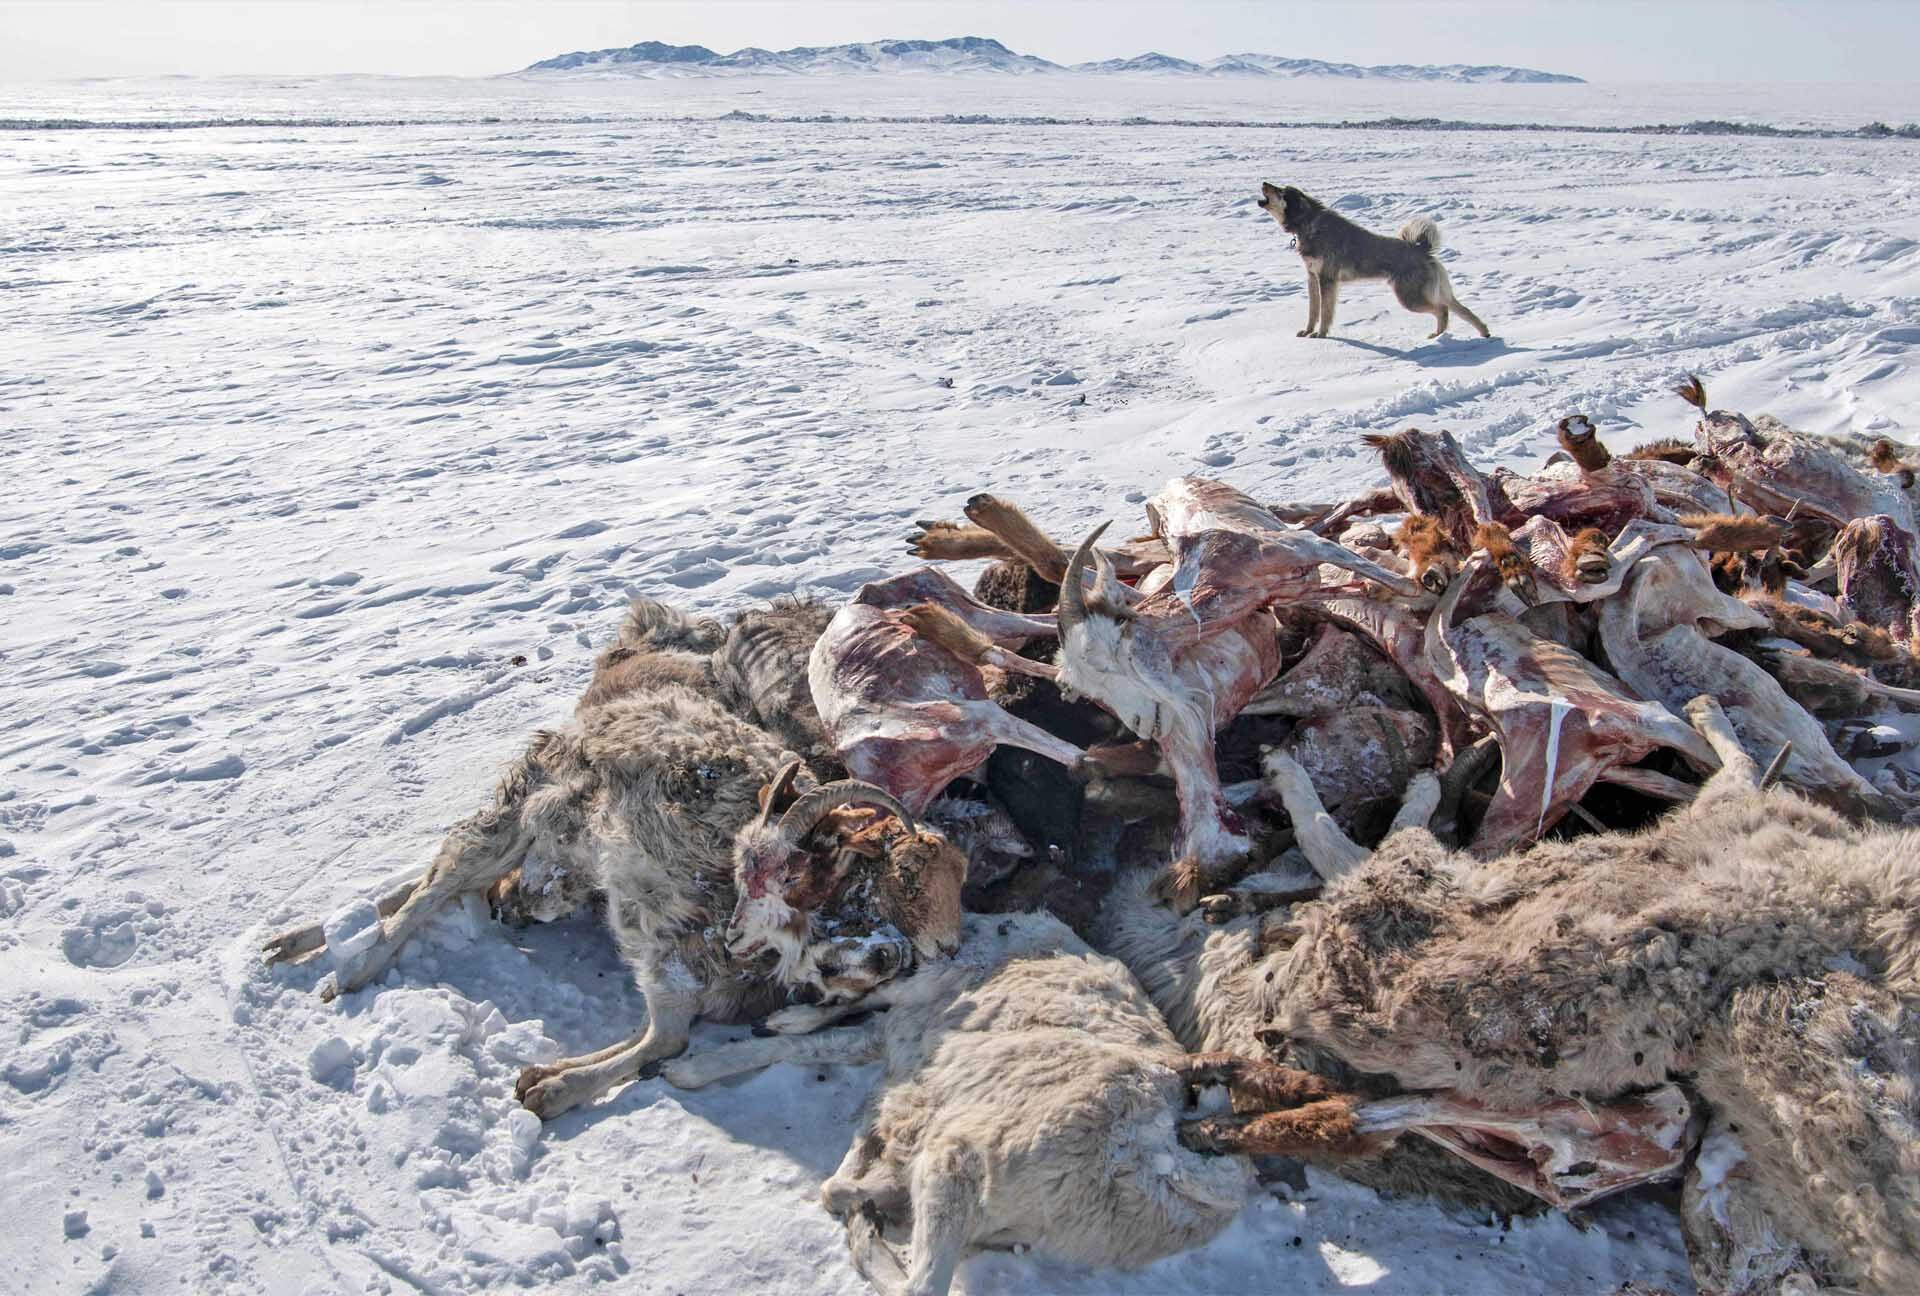 มองโกเลียวิกฤต “หนาวสุดขั้ว” ปศุสัตว์ล้มตายกว่า 2.1 ล้านตัว-อุณหภูมิดิ่งต่อเนื่อง